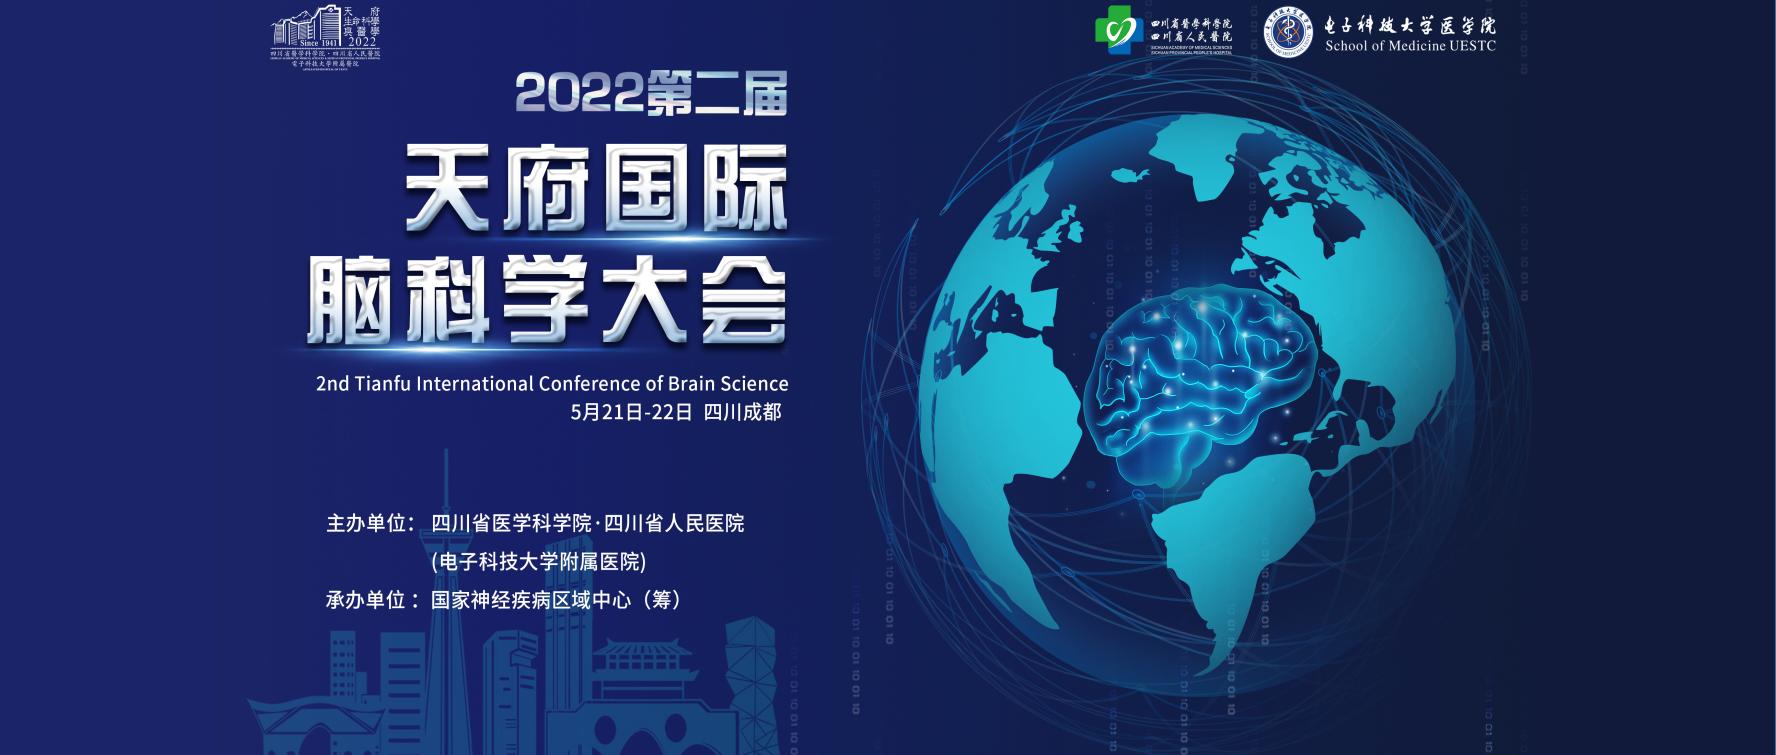 2022第二届天府国际脑科学大会